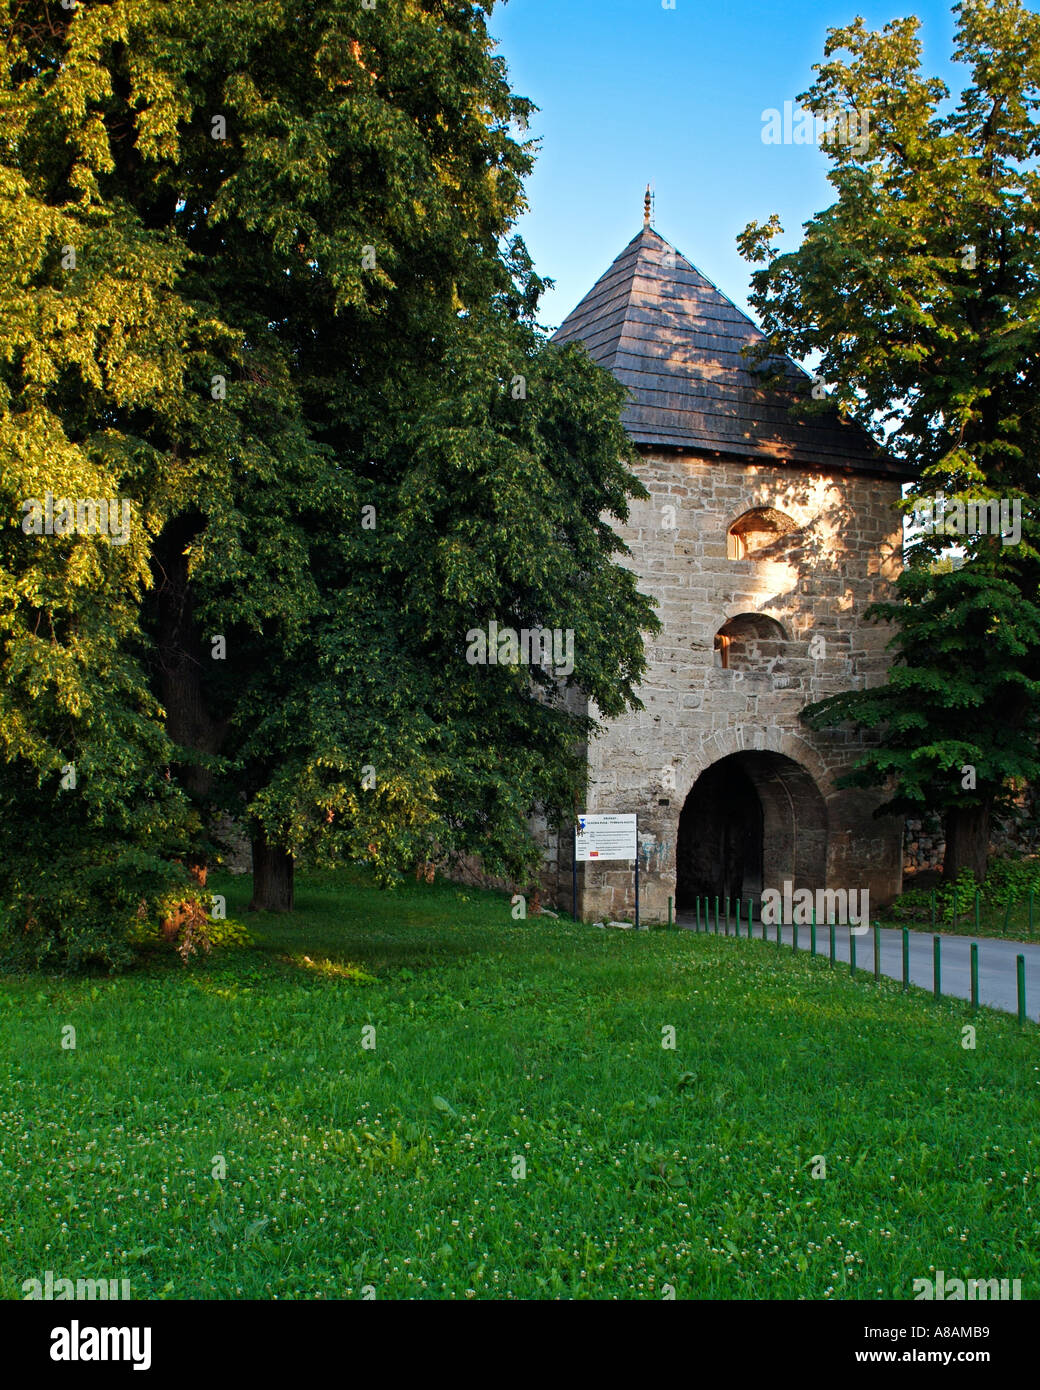 Maison de gardien à Banja Luka Bosnie-Herzégovine Château d'élément d'une série de quatre images prises au fil des saisons Banque D'Images